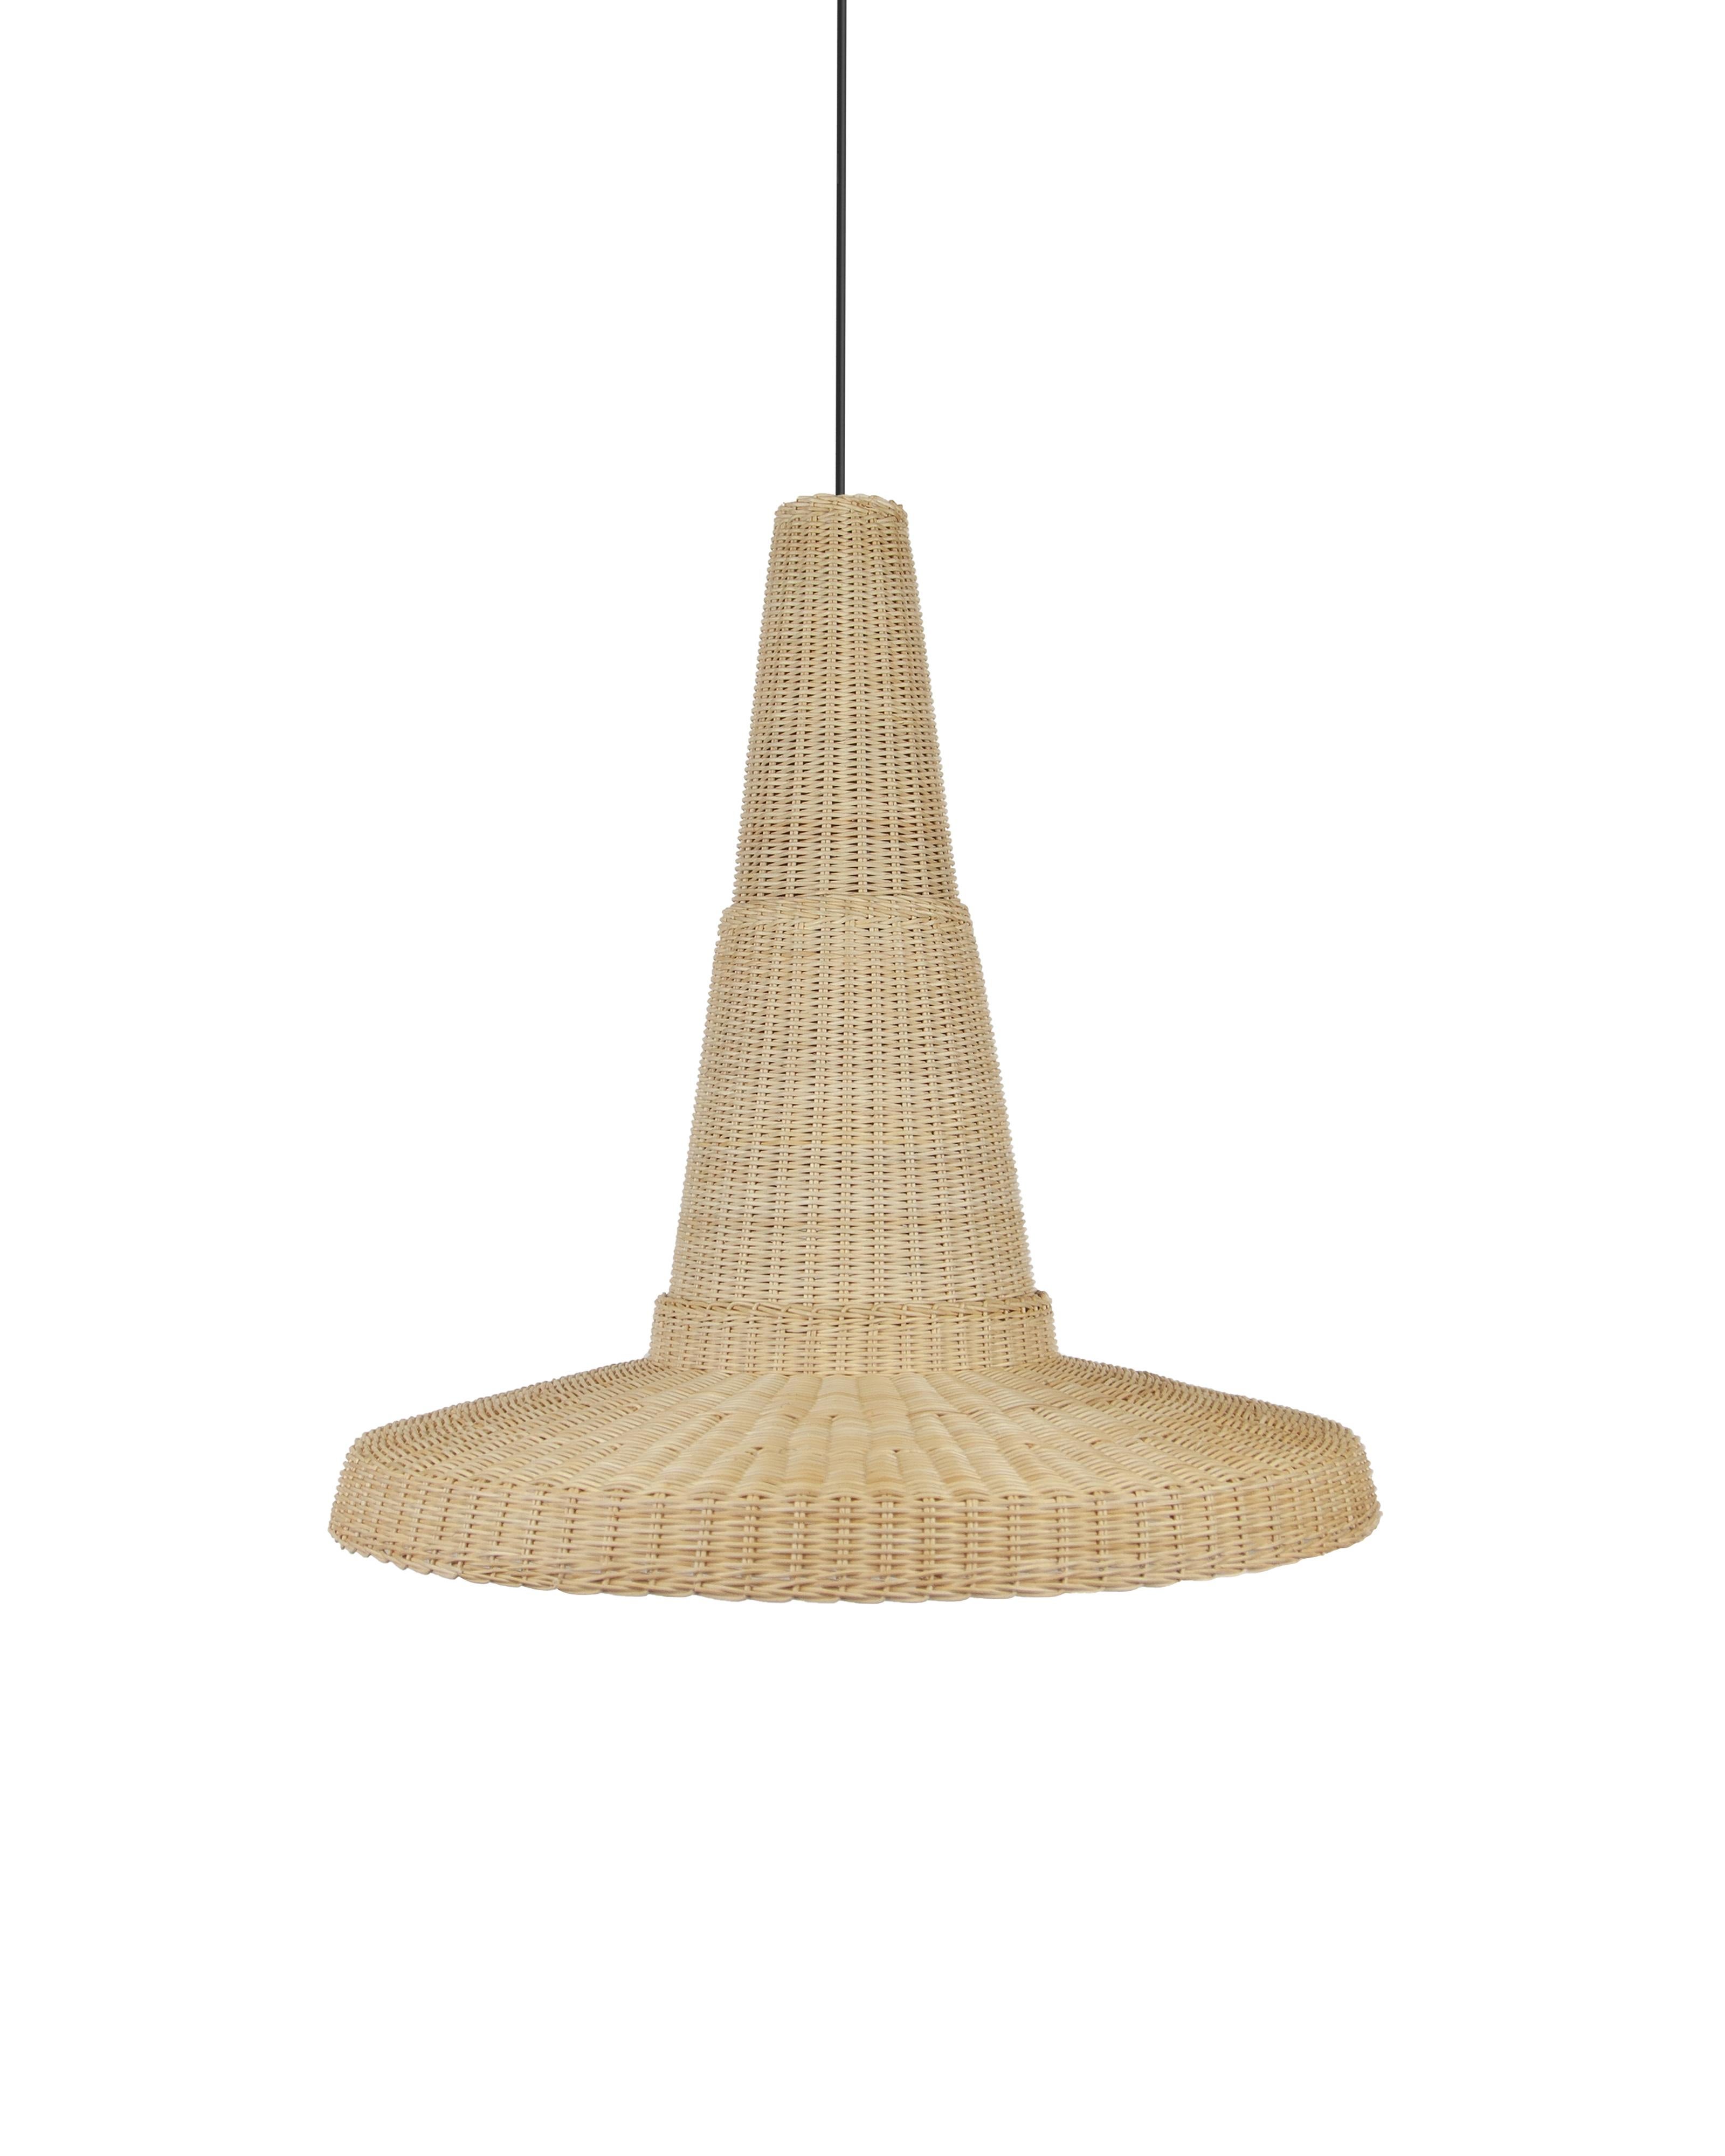 Beige (Natural) Bottega Intreccio Cocolla Pendant in Bamboo Wicker, by Maurizio Bernabei